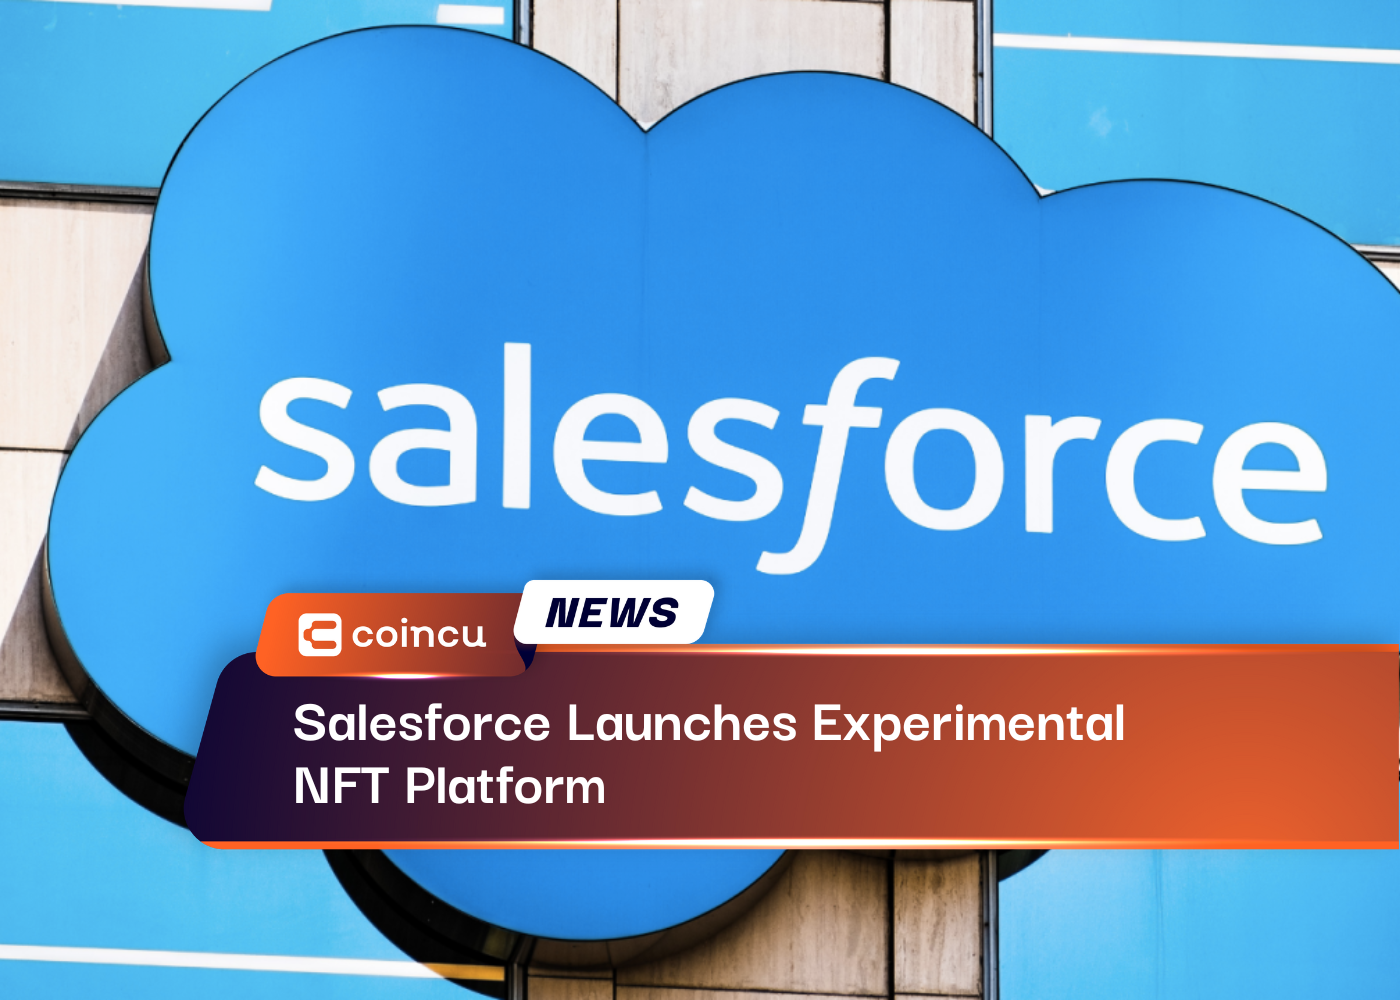 Salesforce Launches Experimental NFT Platform